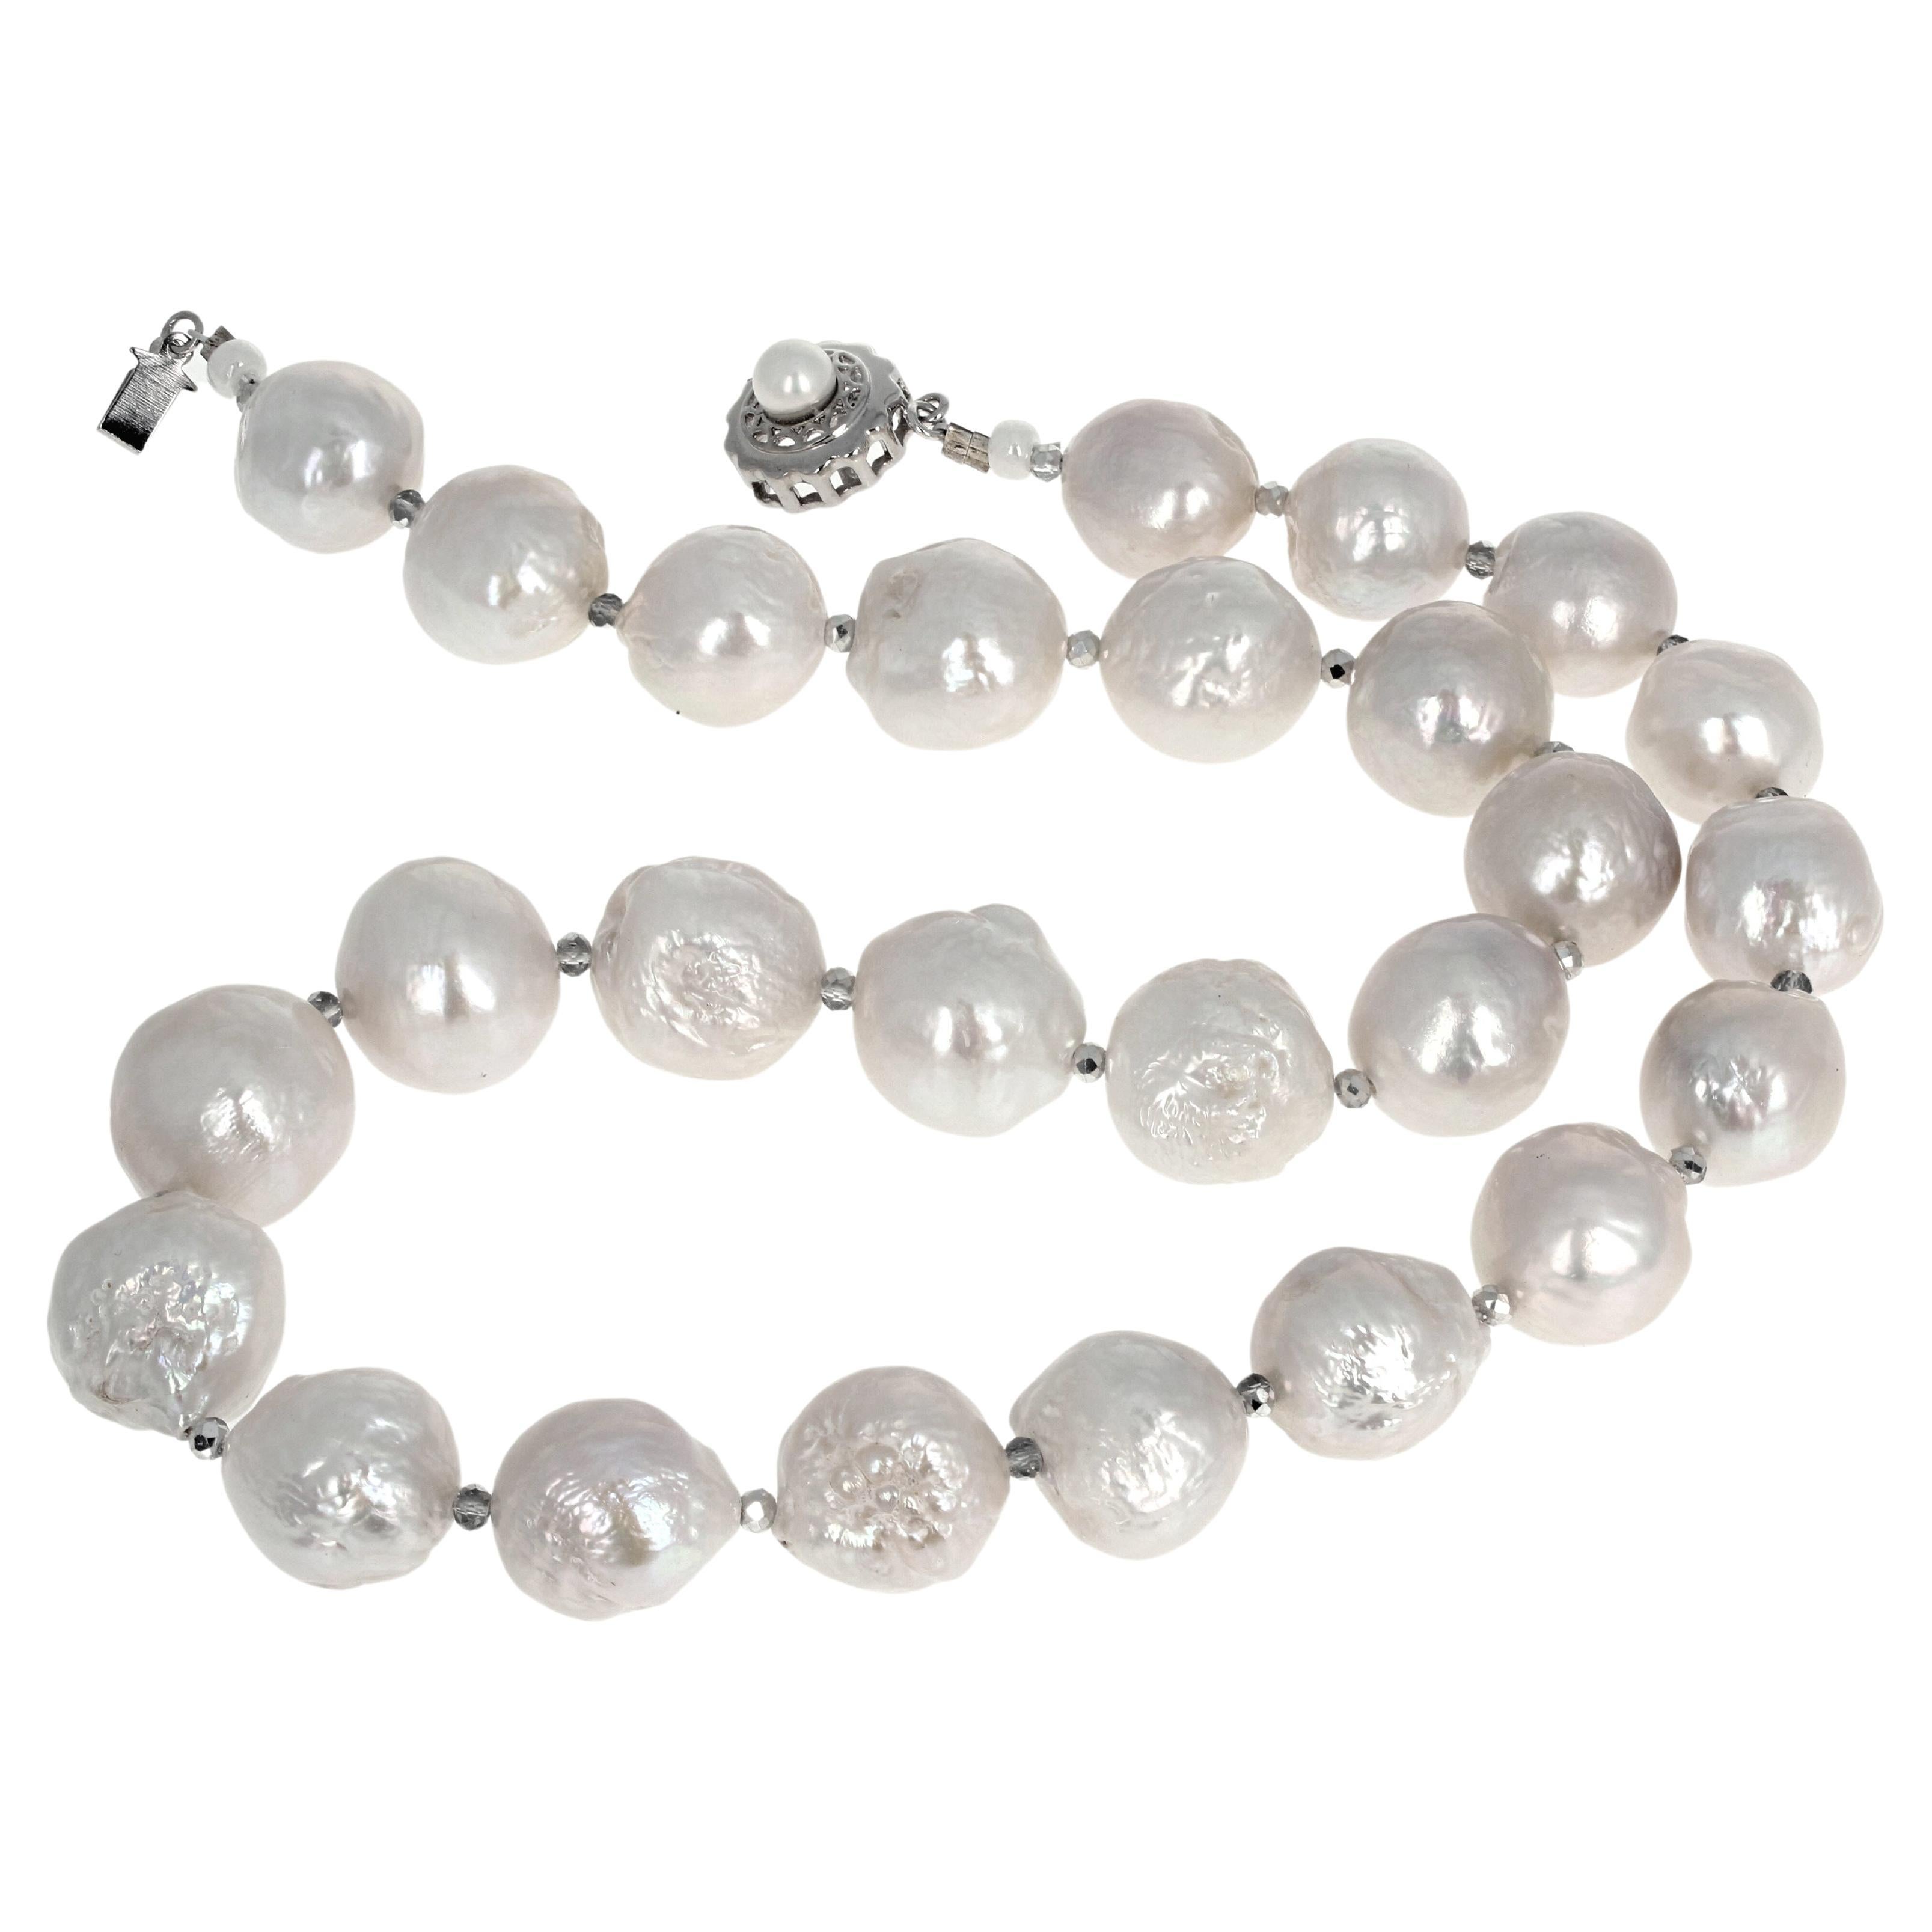 Ces magnifiques perles de culture blanches d'environ 17 mm sont serties dans ce collier d'une longueur de 12 pouces.  (Ils ne sont pas gris - ils sont blancs). Le fermoir est un fermoir à glissière facile à utiliser.  Si vous souhaitez un simple